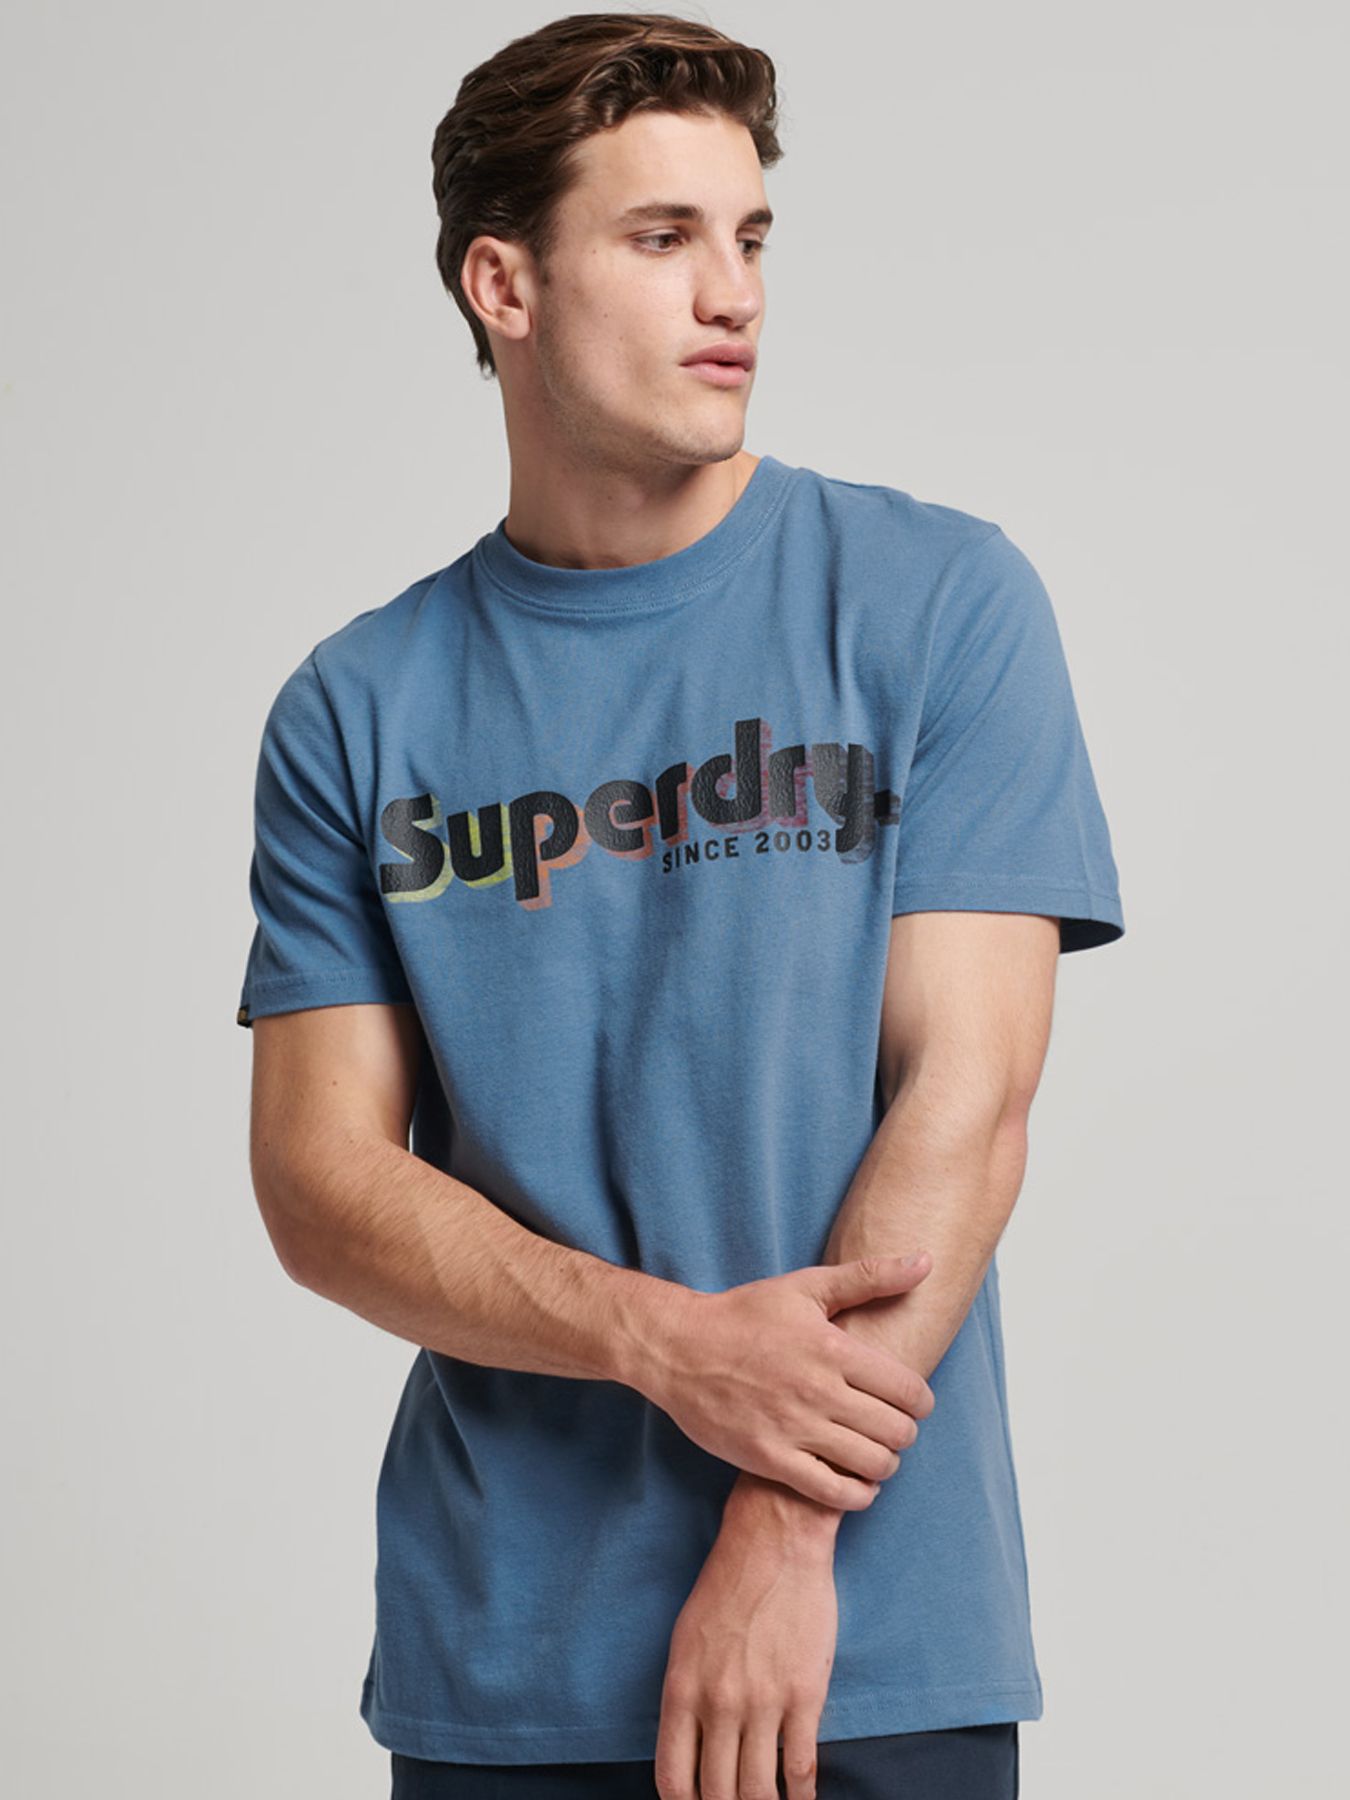 Superdry Terrain logo classic t shirt 9ej Wedgewoo 00104574-9EJ